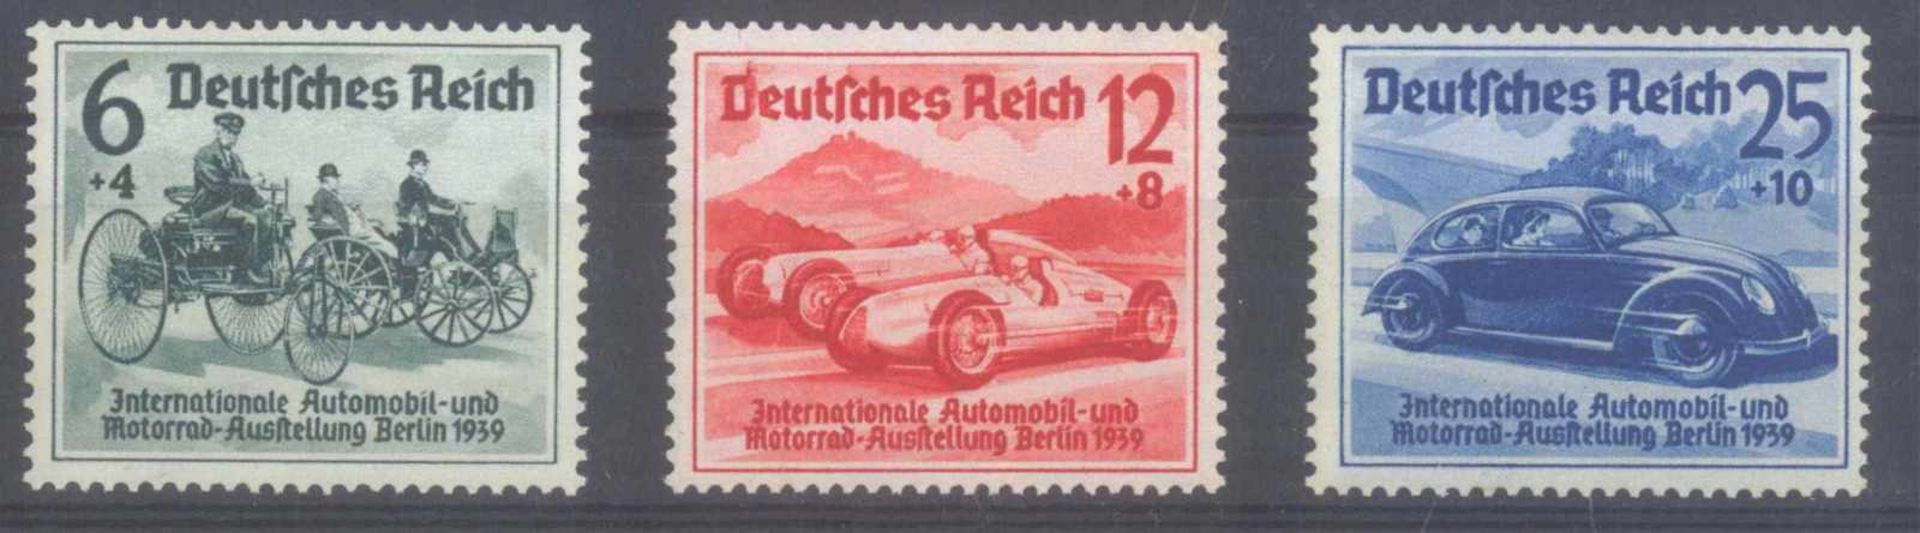 III. REICH 1939, I.A.A. BerlinMichelnummern 686 bis 688, postfrisch Luxus, Katalogwert110,- Euro